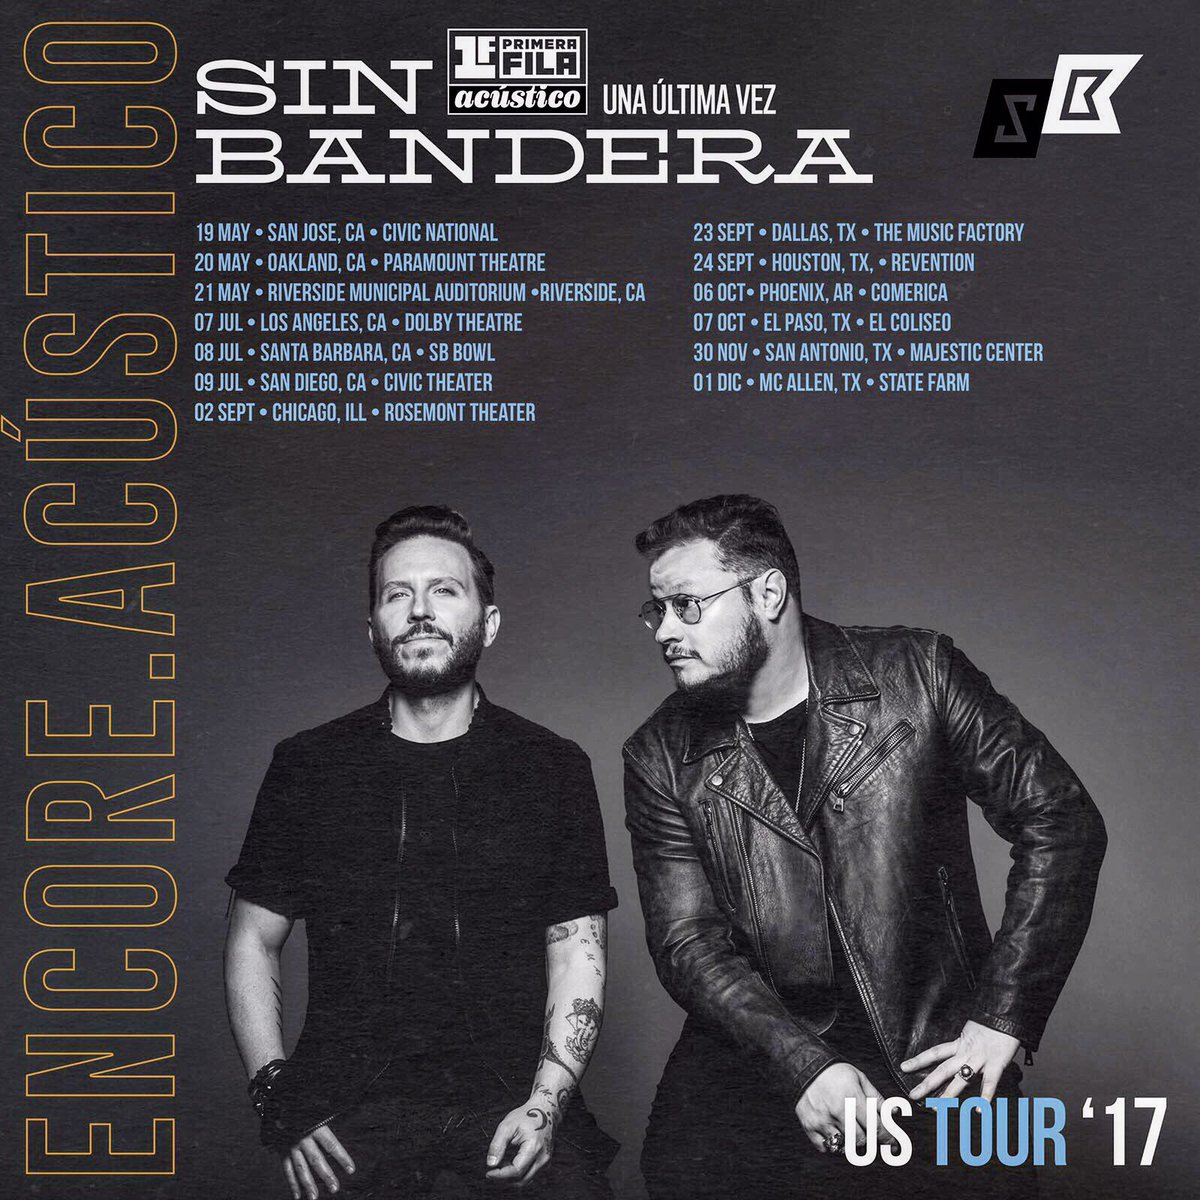 Concierto de Sin Bandera, Una Última Vez Tour, en Santa Barbara, CA, Estados Unidos, Sábado, 08 de julio de 2017